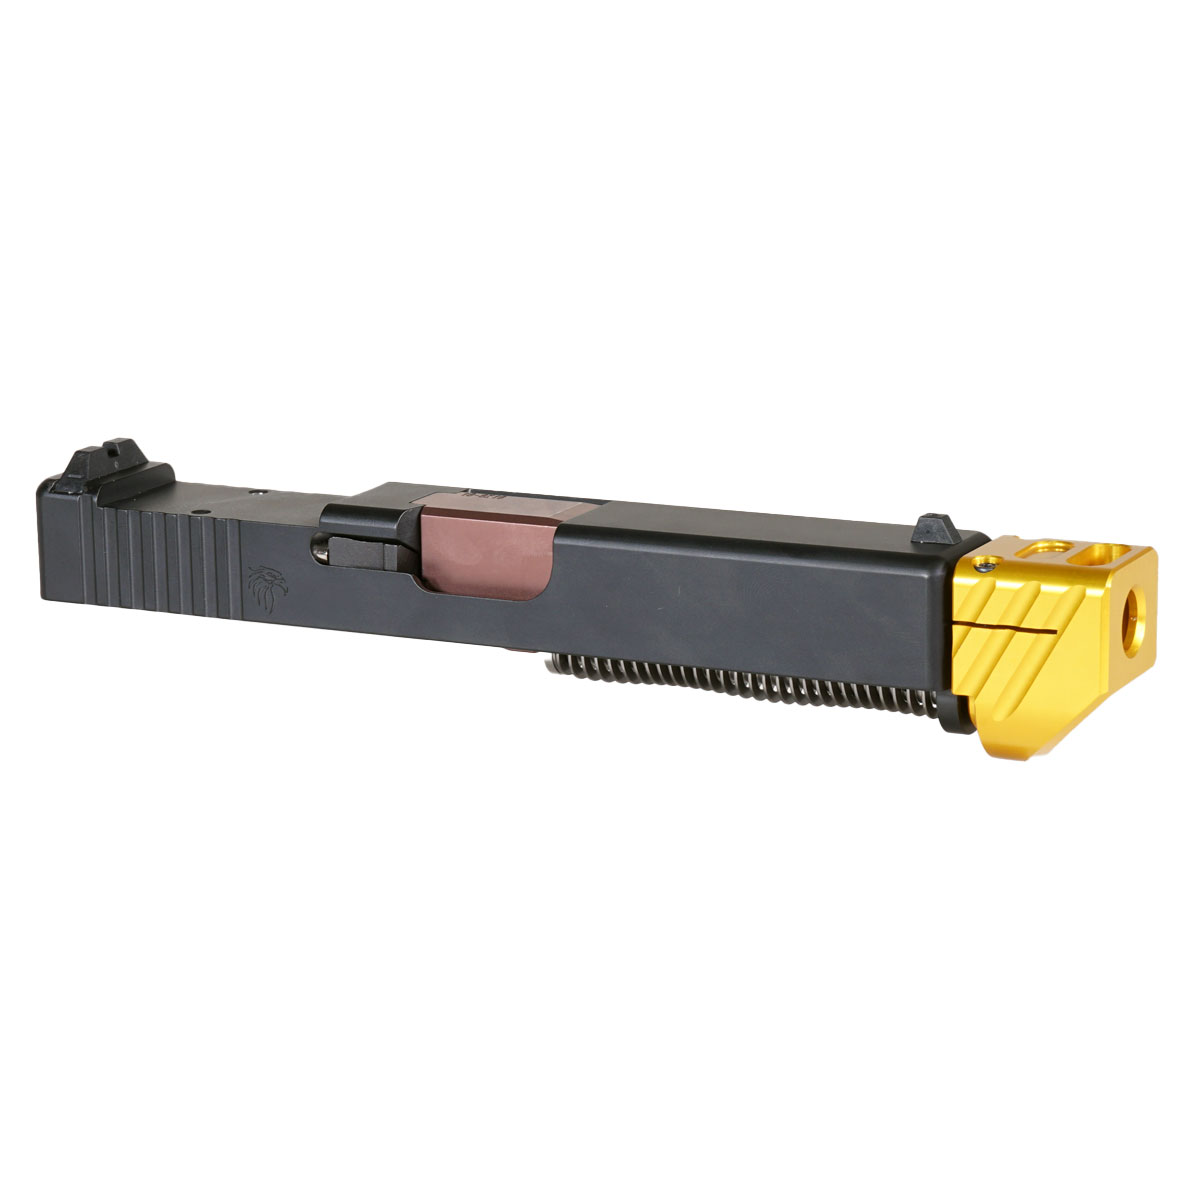 MMC 'Blockbuster V2 w/ Gold Compensator' 9mm Complete Slide Kit - Glock 19 Gen 1-3 Compatible